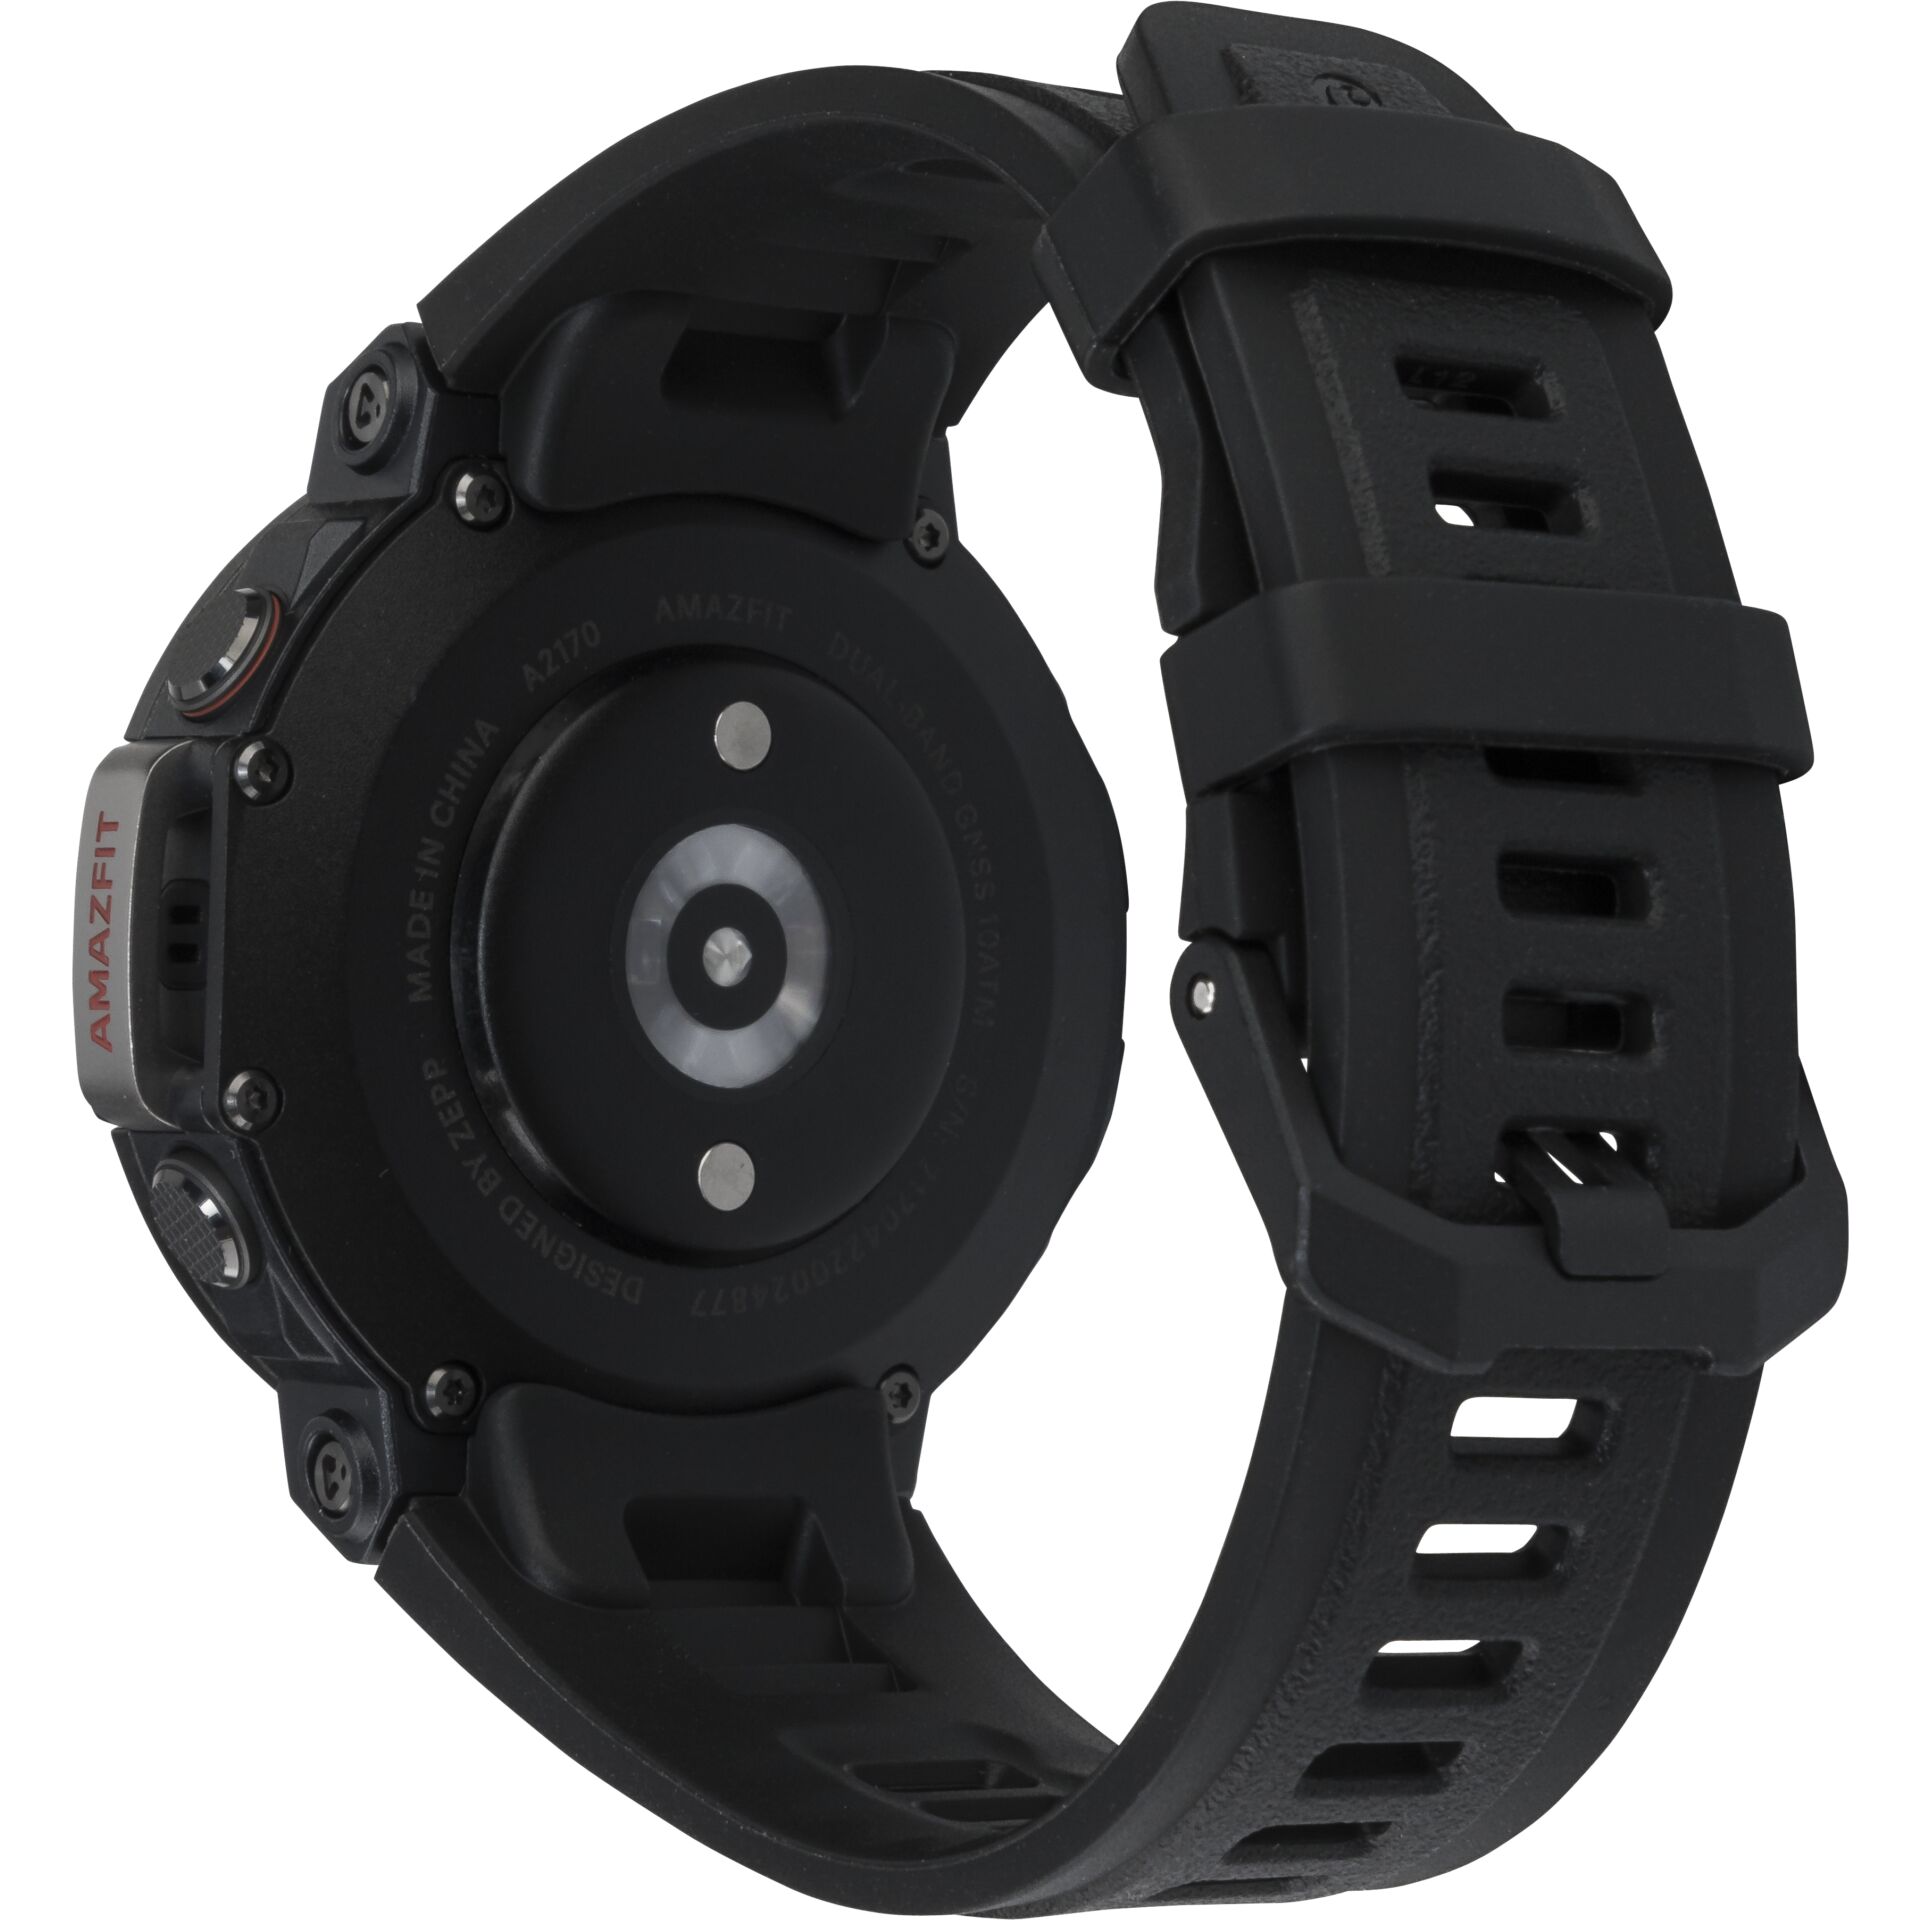 Amazfit T-Rex 2 Series Ember black - Smartwatch - W2170OV6N